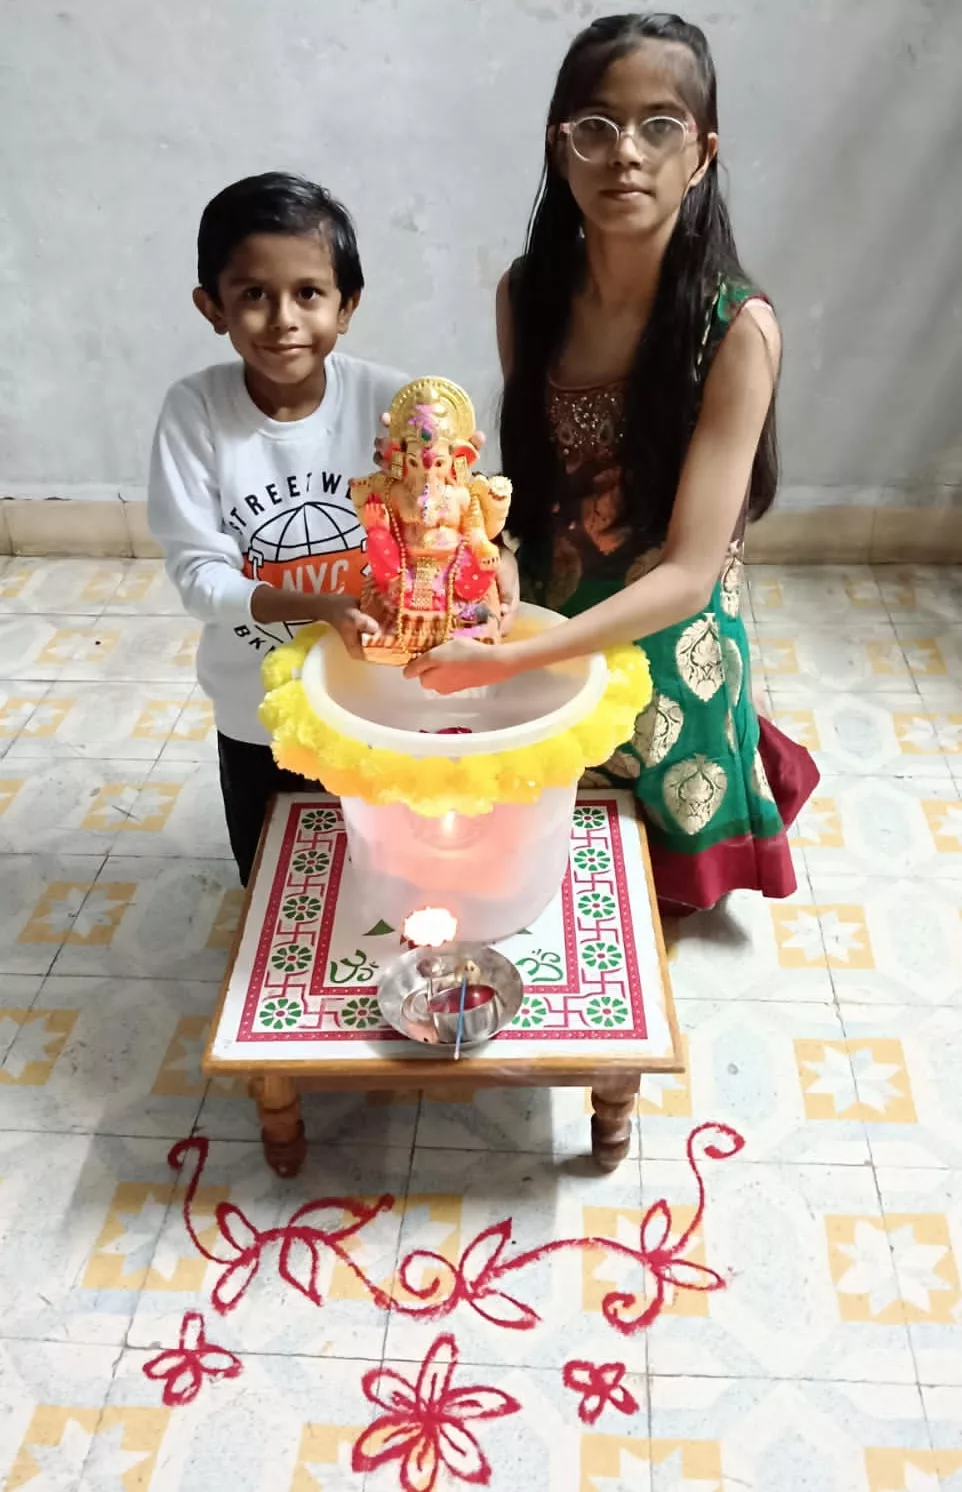 बच्चों द्वारा गणेश जी की मूर्ति का किया घर पर विसर्जन | New India Times